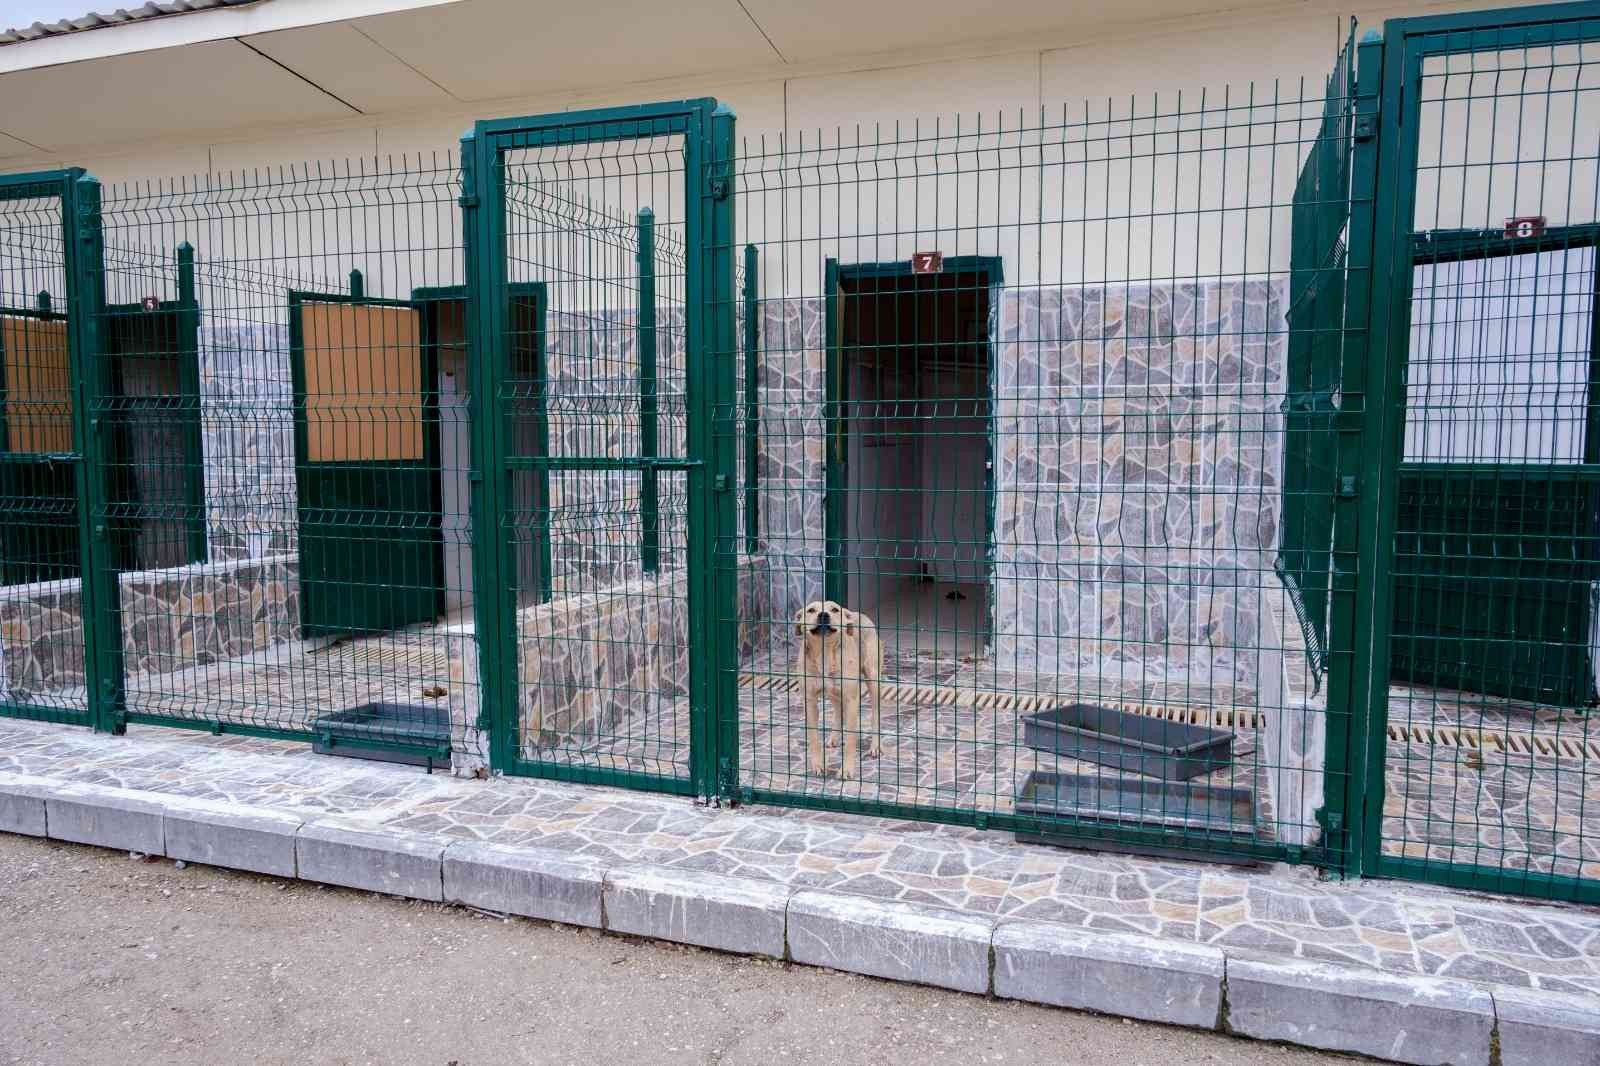 Kastamonu Belediyesi Geçici Hayvan Bakımevi yenileniyor #kastamonu